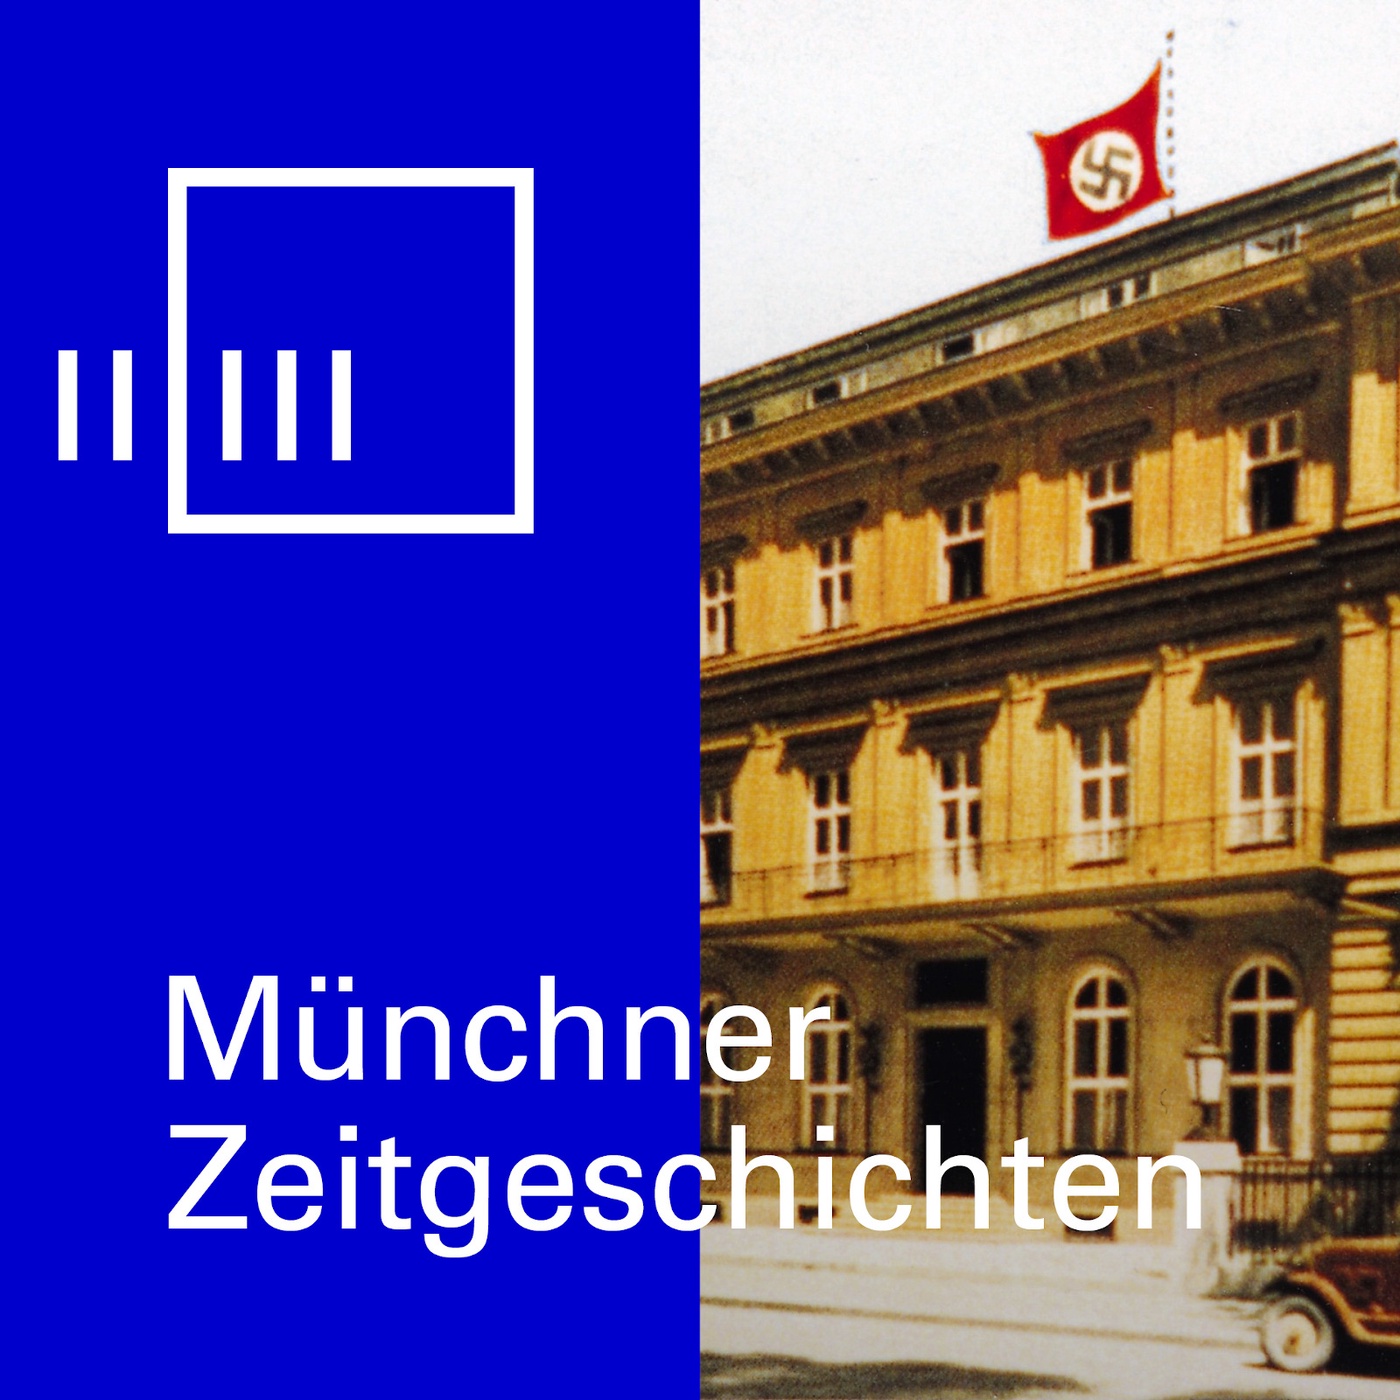 NS-Architektur: ‚Führerbau‘ der NSDAP